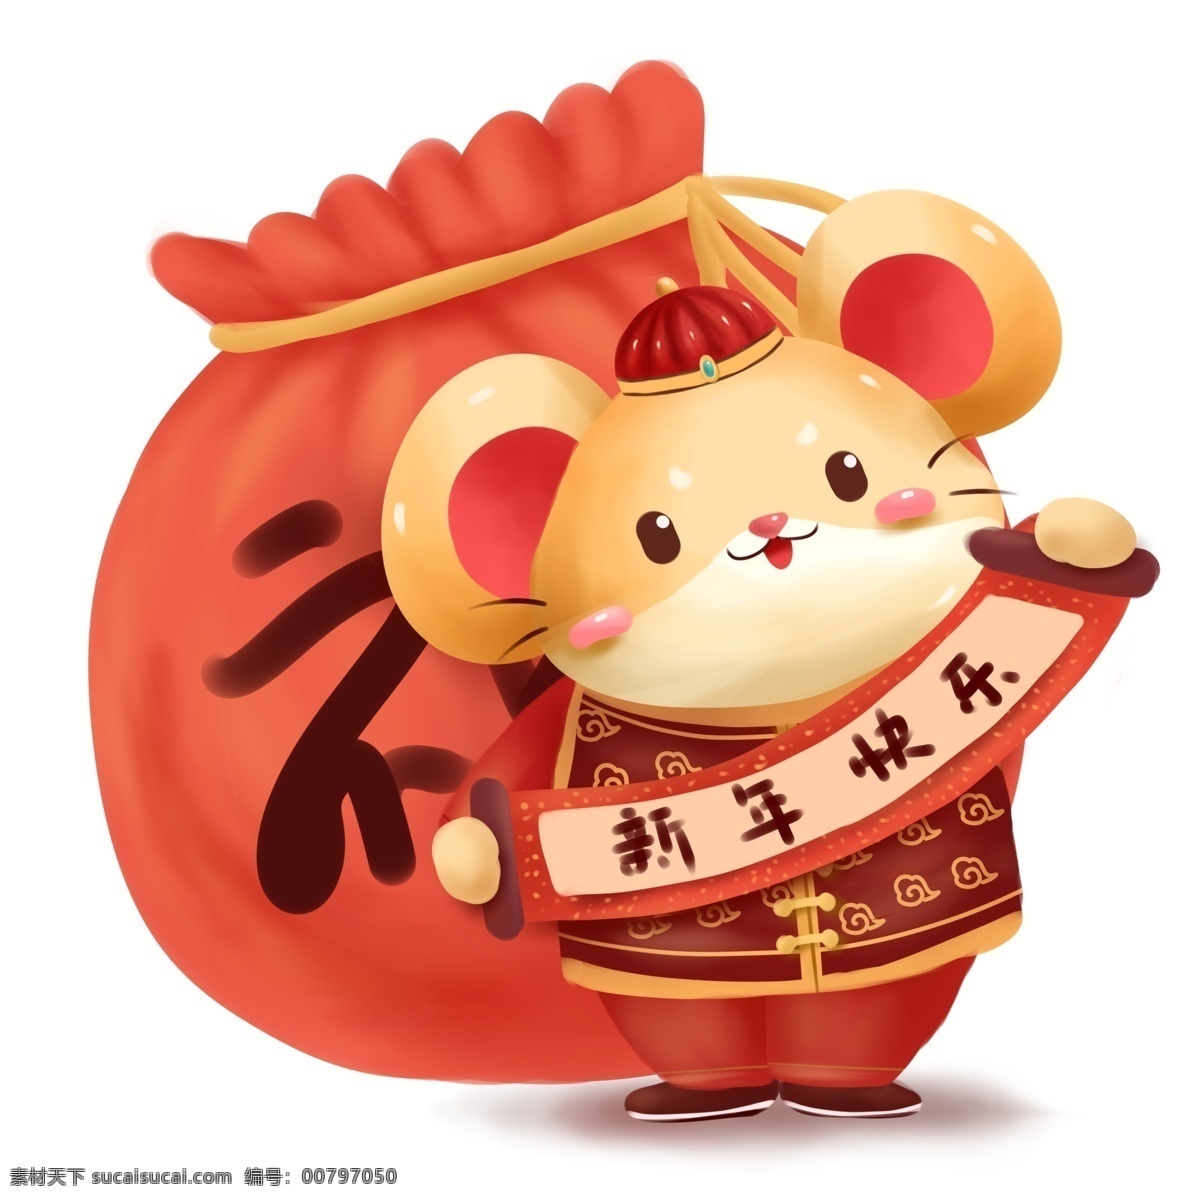 新年 红色 喜庆 2020 鼠年 新春 商用 卡通 可爱 小老鼠 过年 春节 贺年 贺岁 拜年 新年快乐 卷轴 传统 节日 福袋 手绘 文化 节日元素